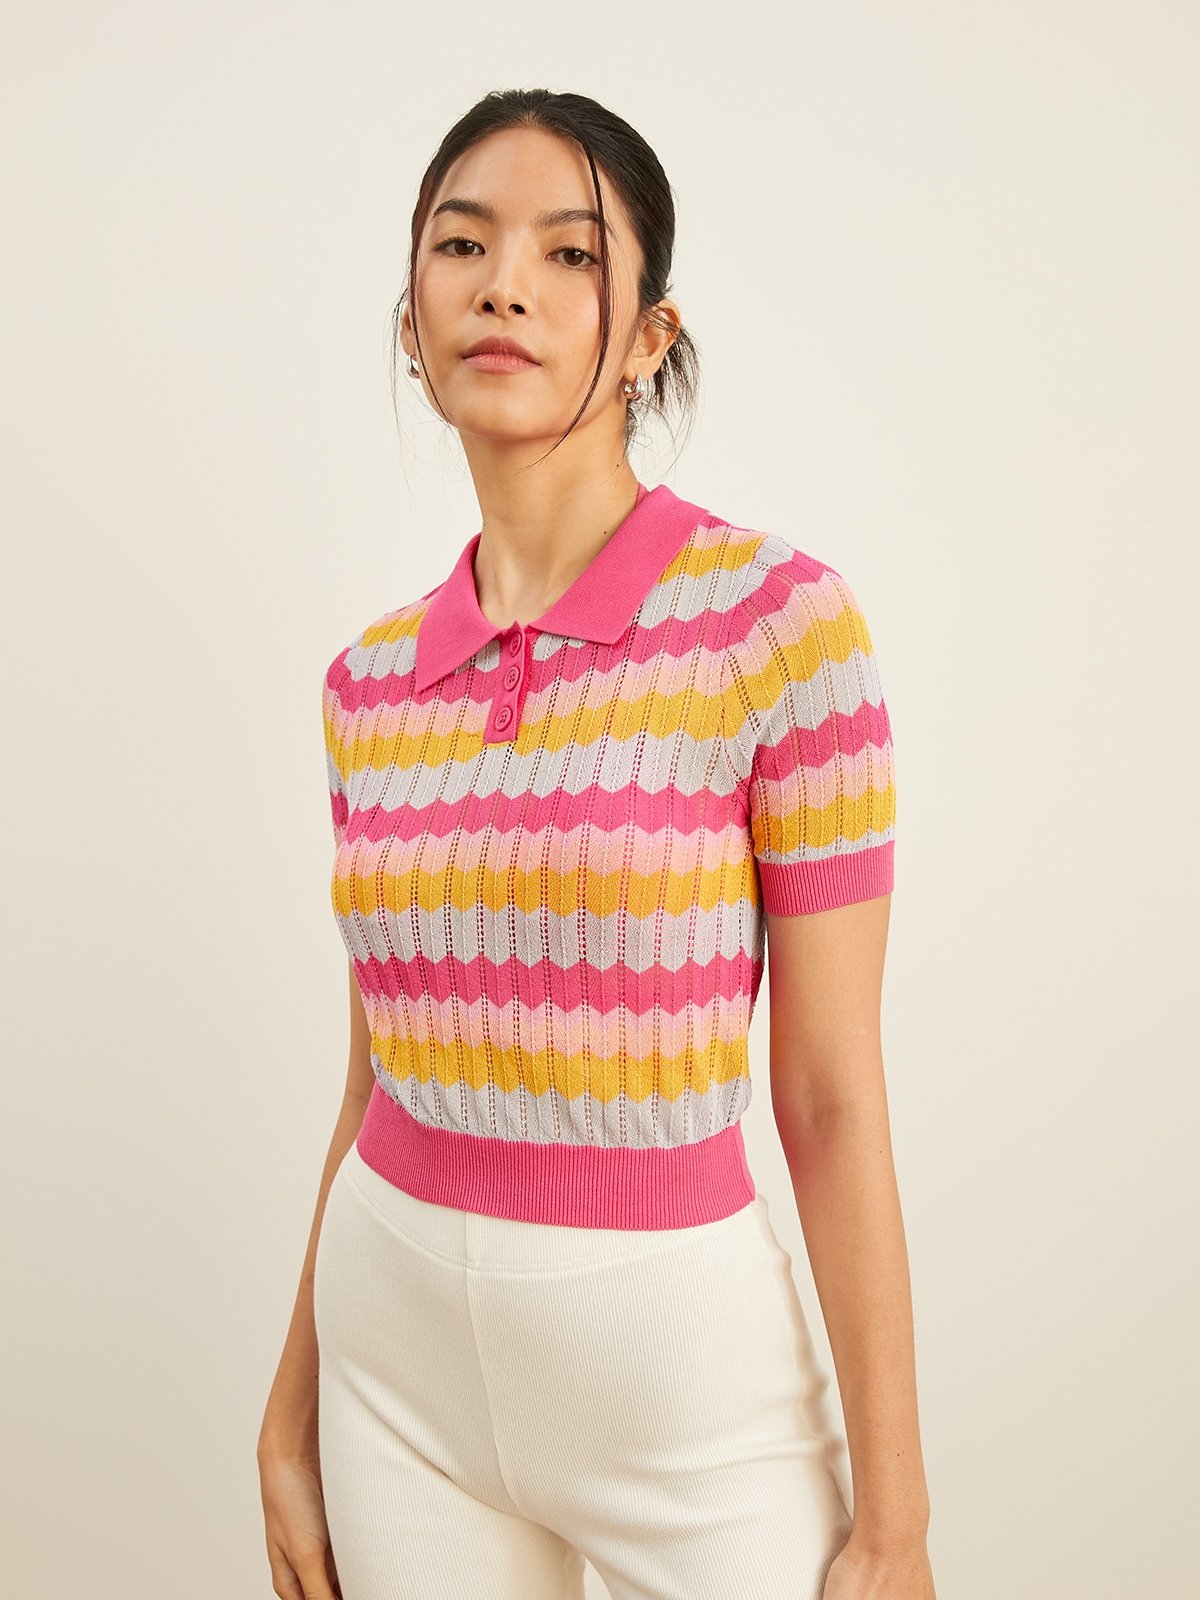 Collared Pattern Knit Top - Multi Color - Pomelo Fashion